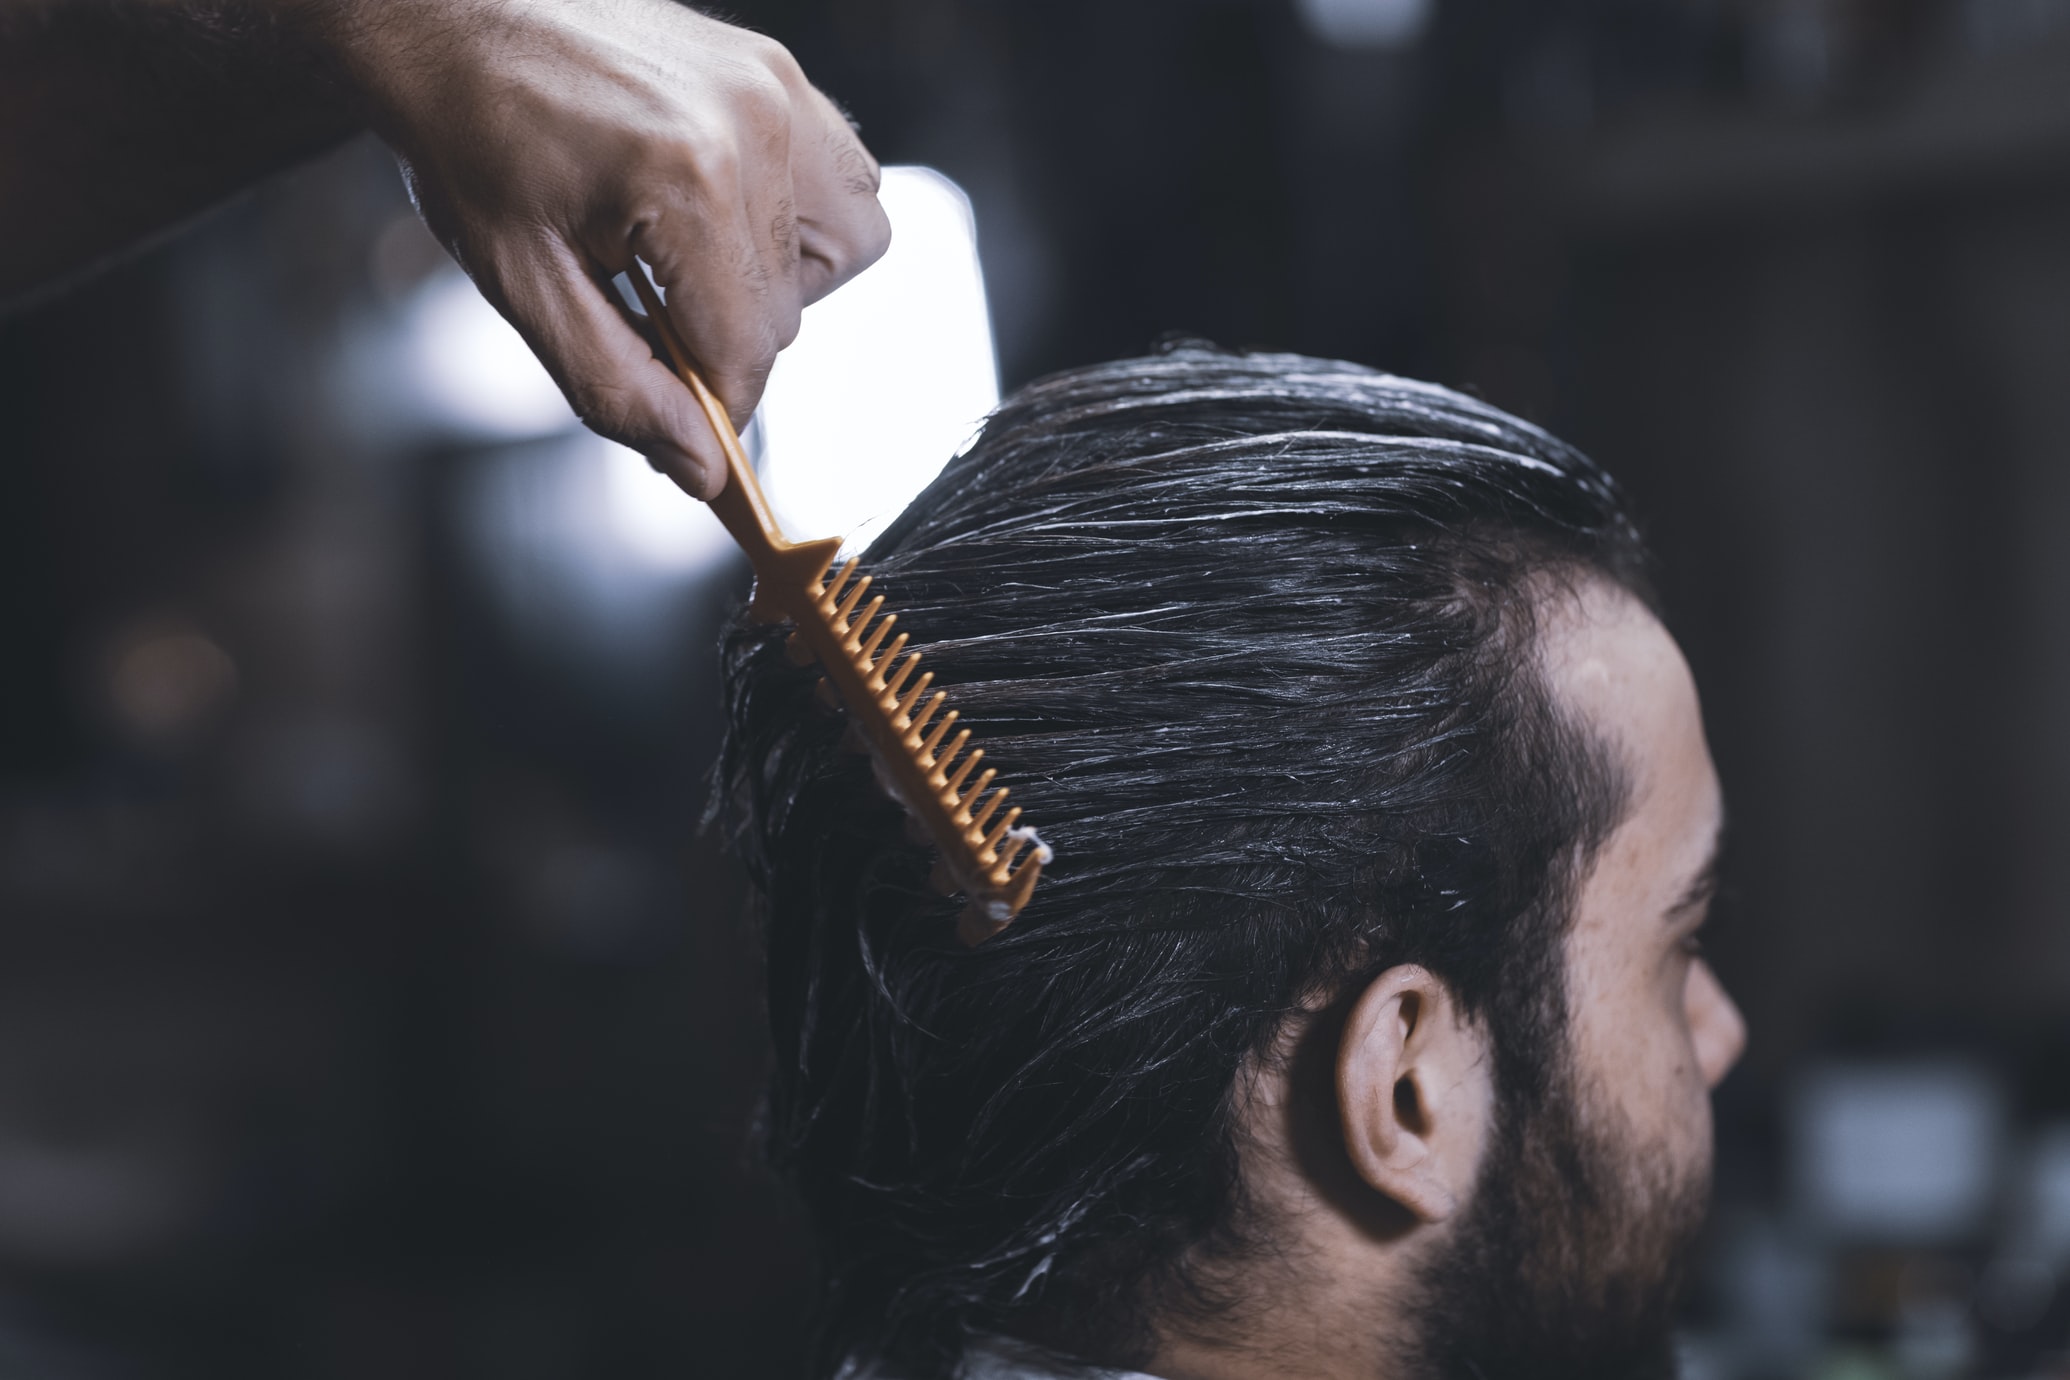 combing hair of barbershop client